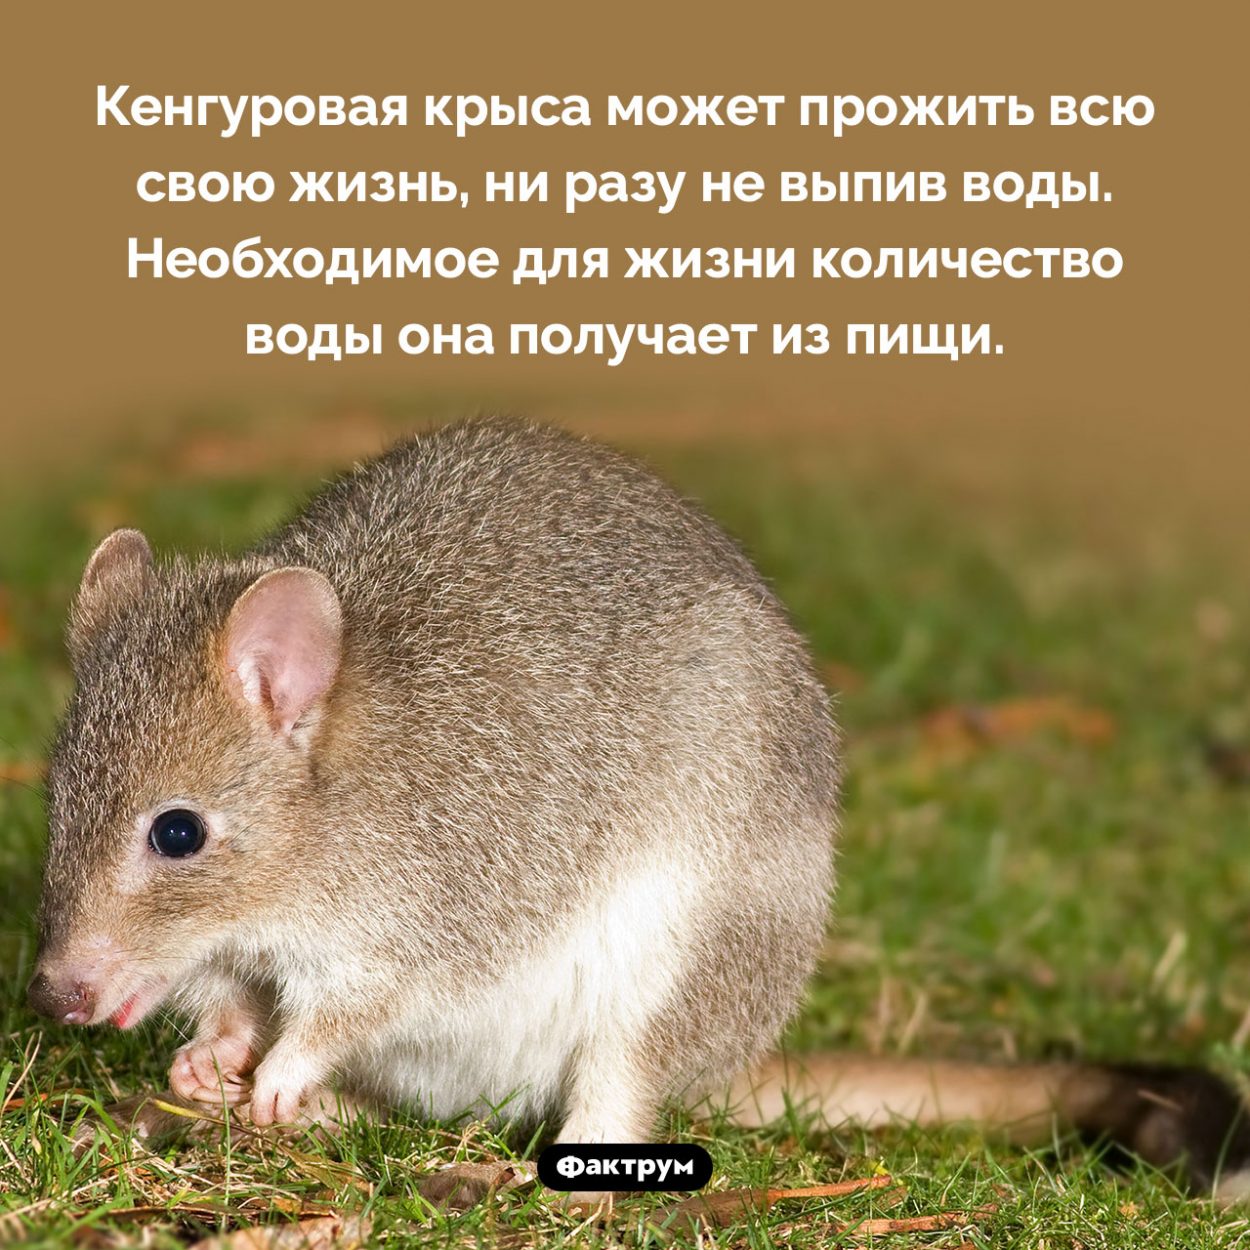 Кенгуровая крыса почти не пьёт. Кенгуровая крыса может прожить всю свою жизнь, ни разу не выпив воды. Необходимое для жизни количество воды она получает из пищи.